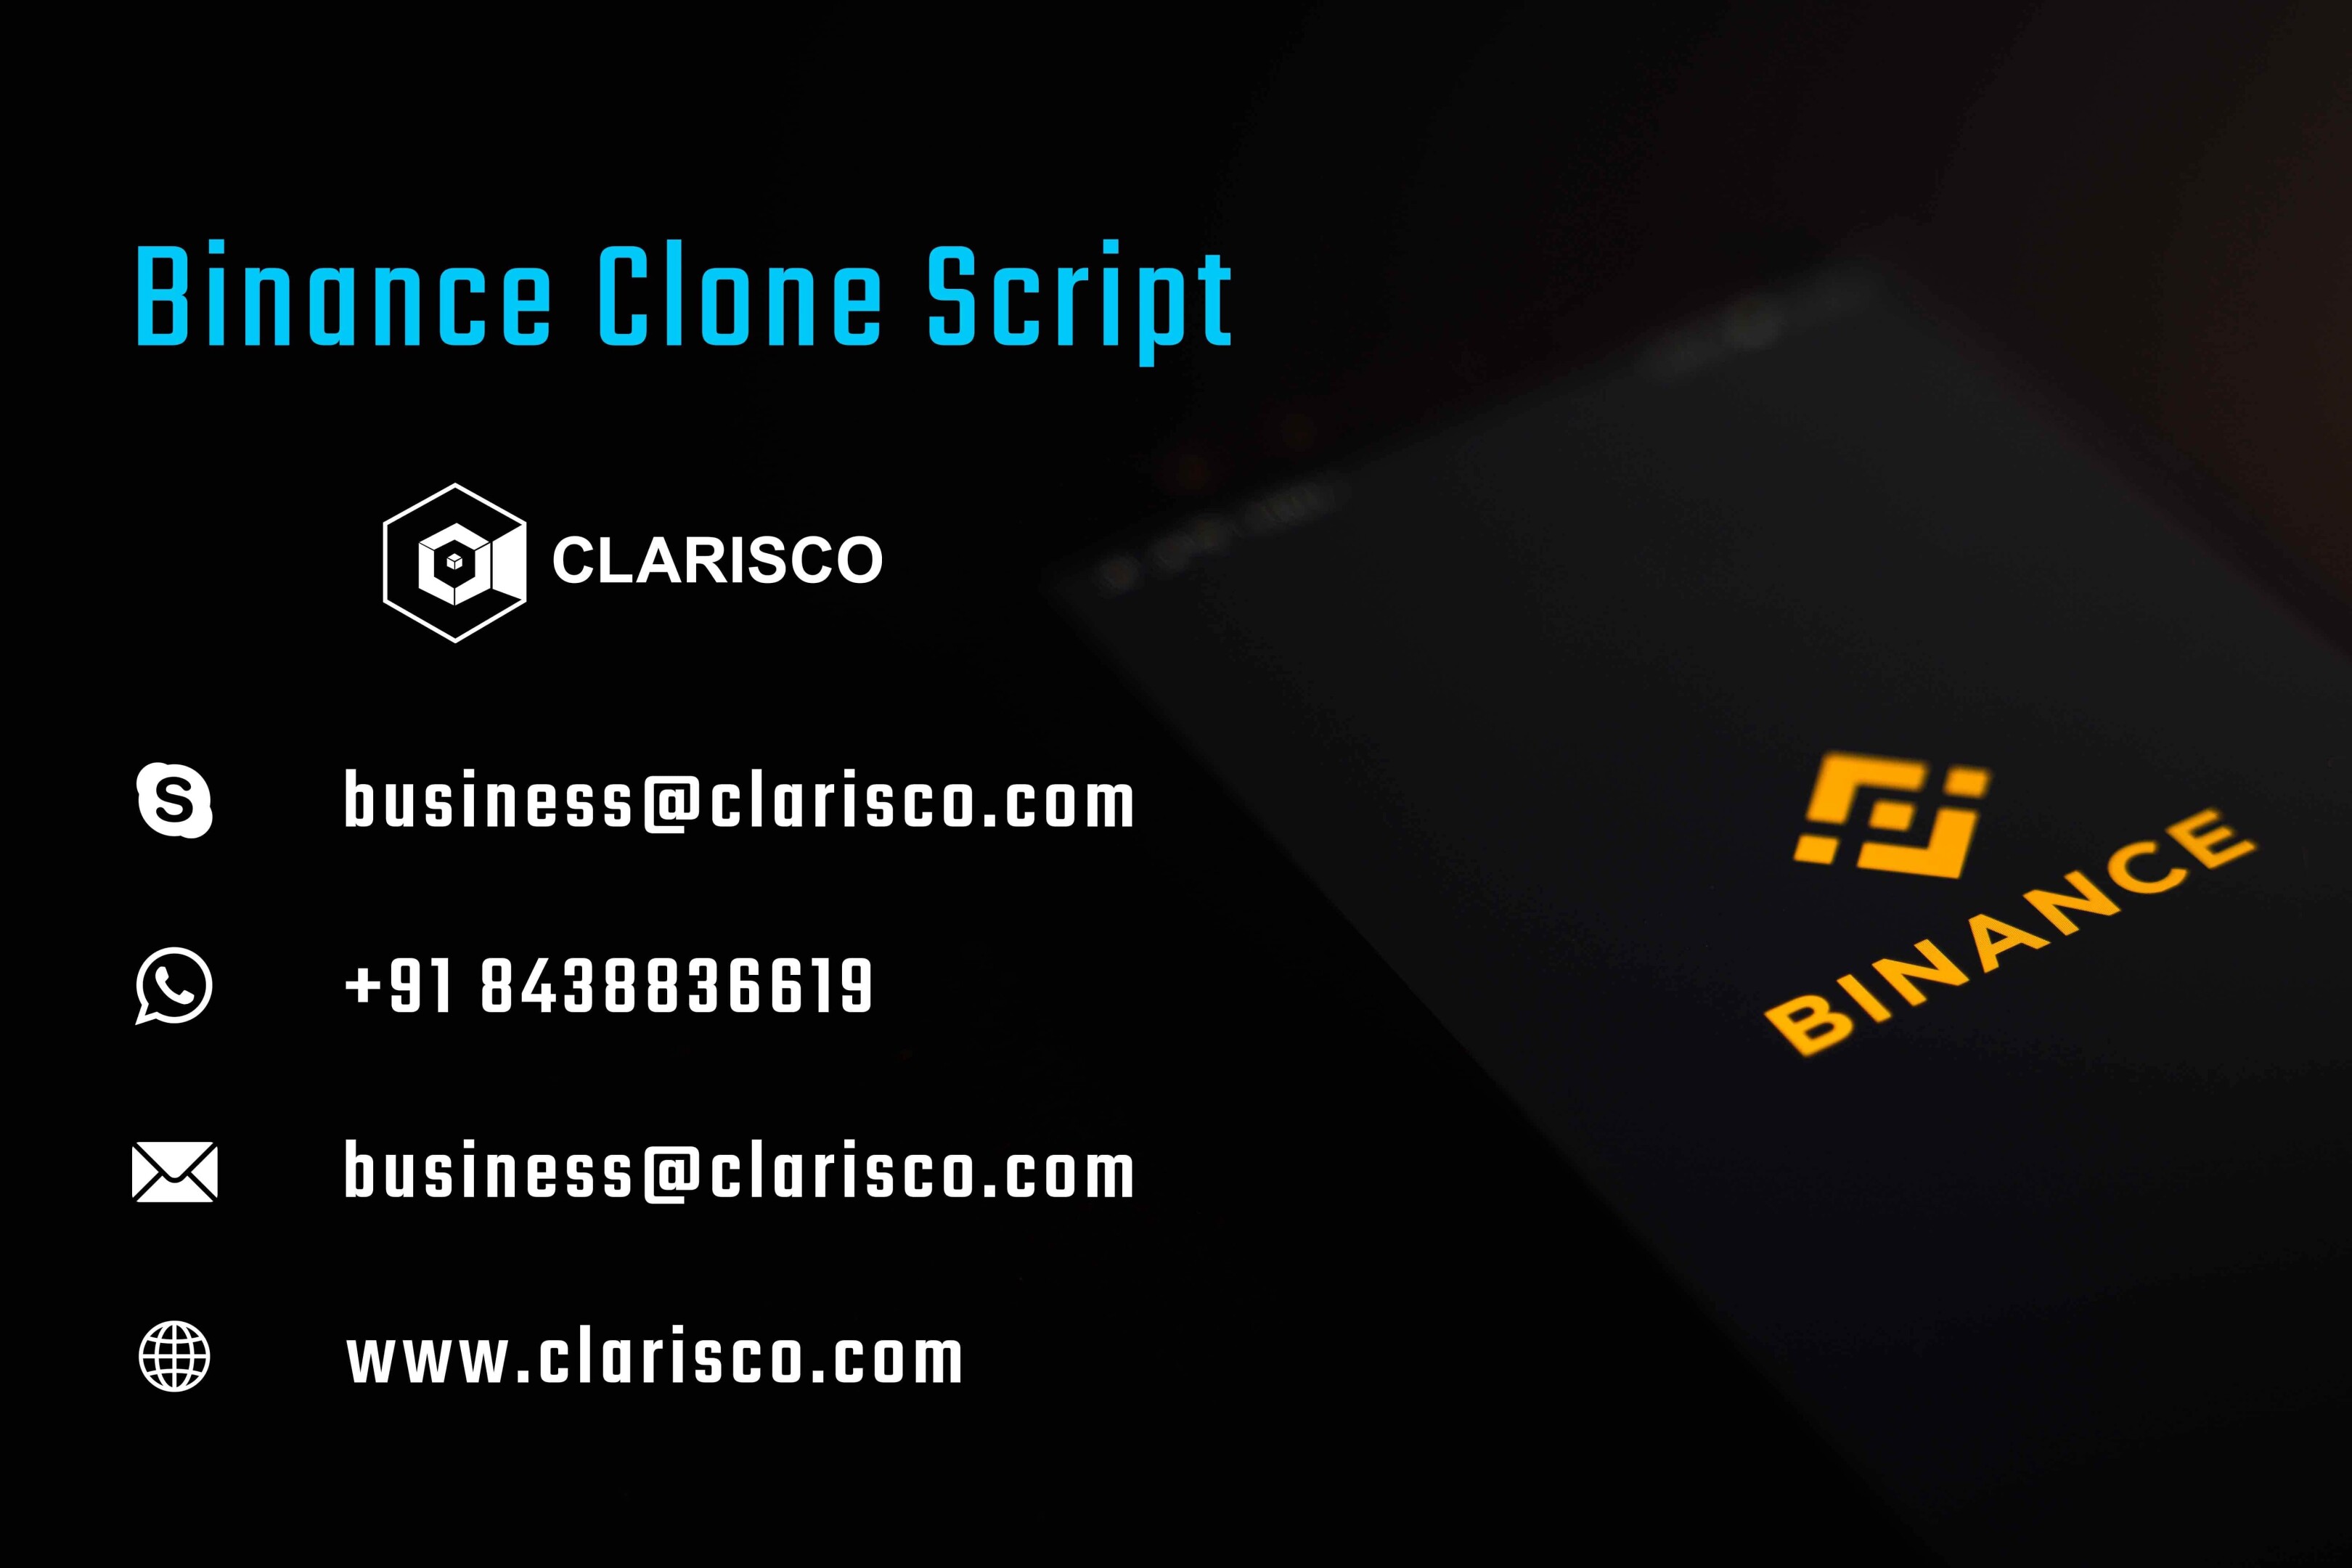 binance-clone-script.jpg